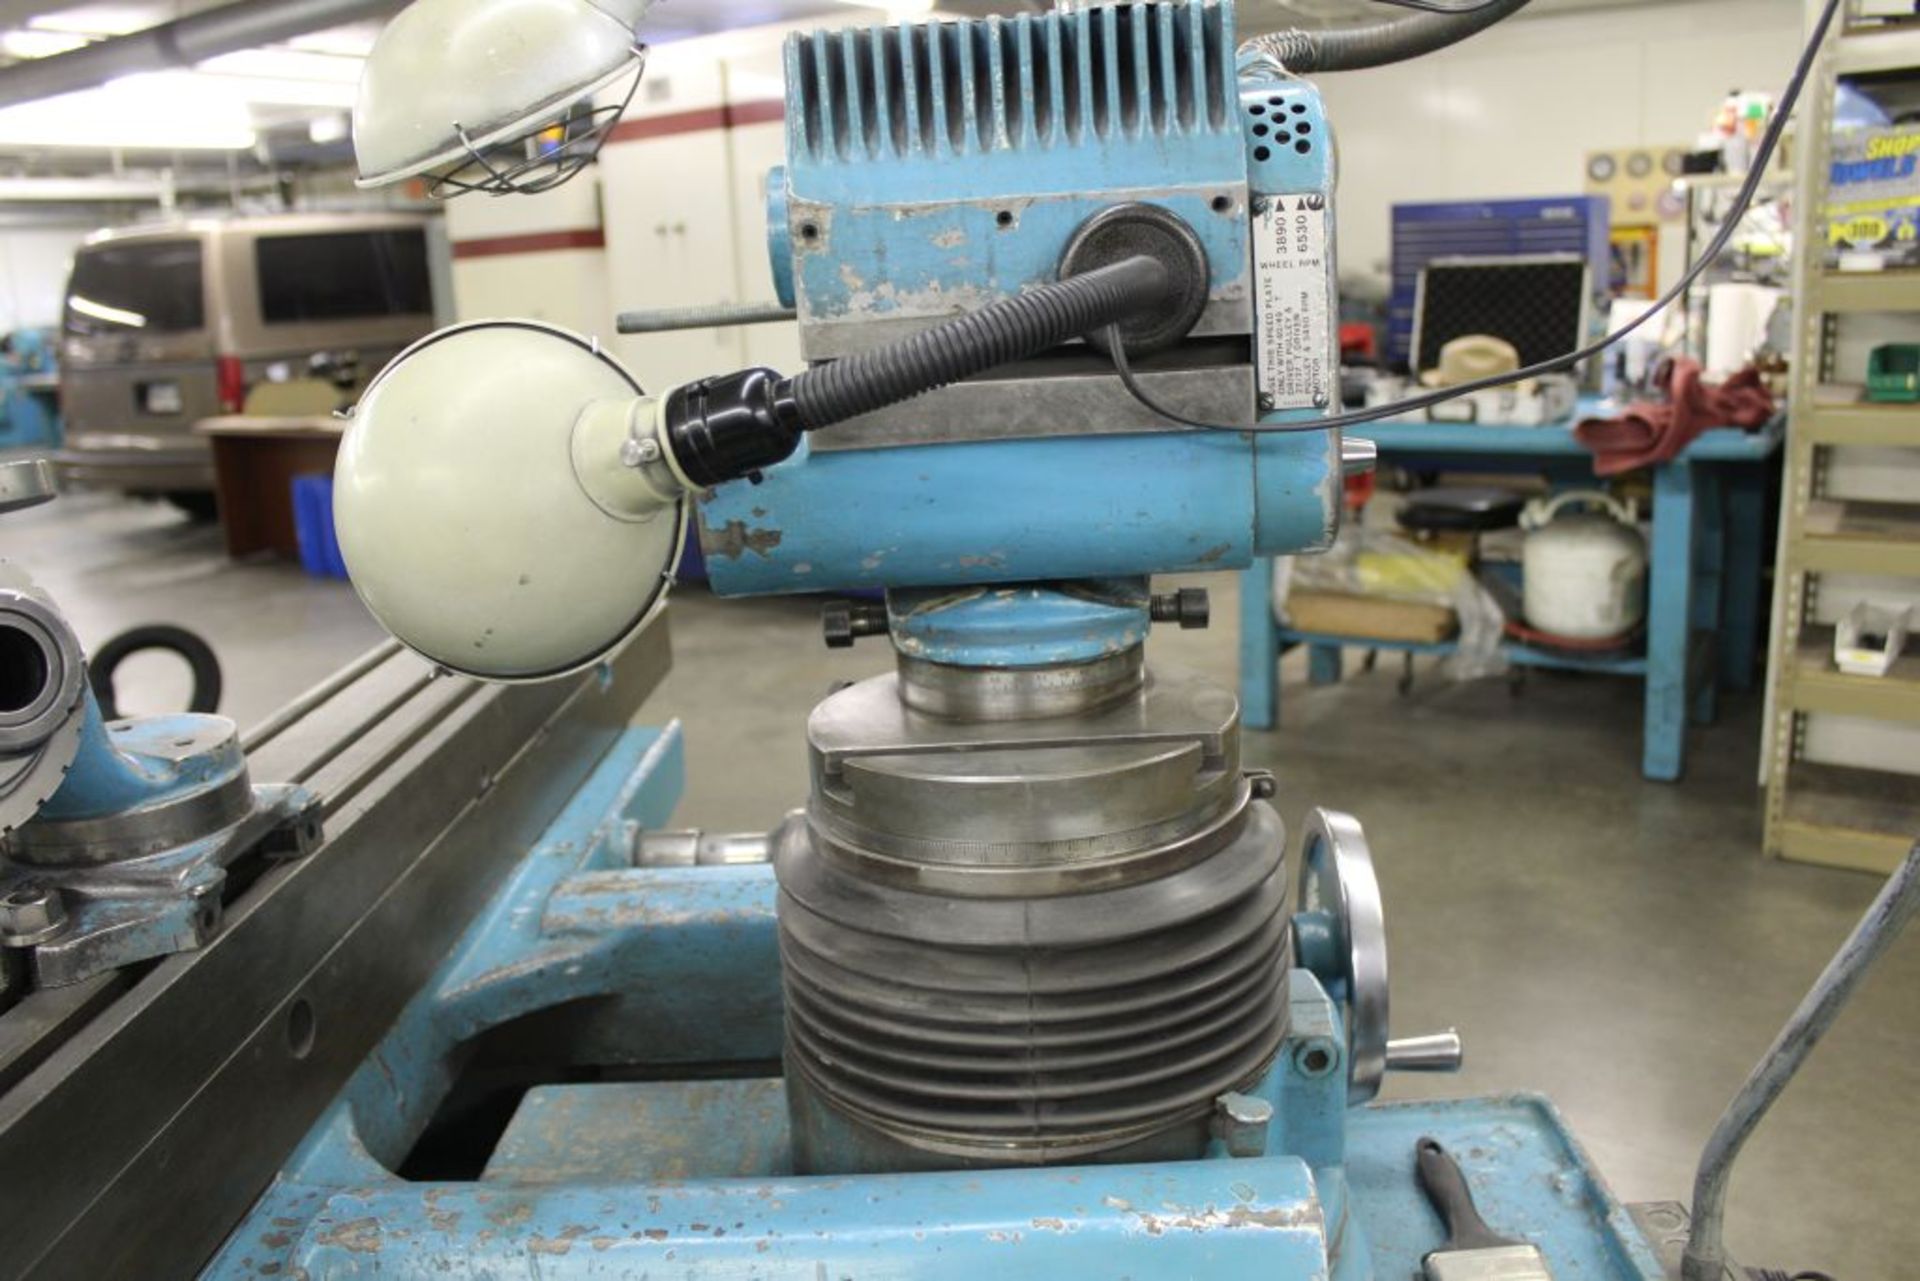 1974 Cincinnati model 2 tool & cutter grinder, sn 31512T74-0002, has 2 axis 360 degree grinding - Image 6 of 18